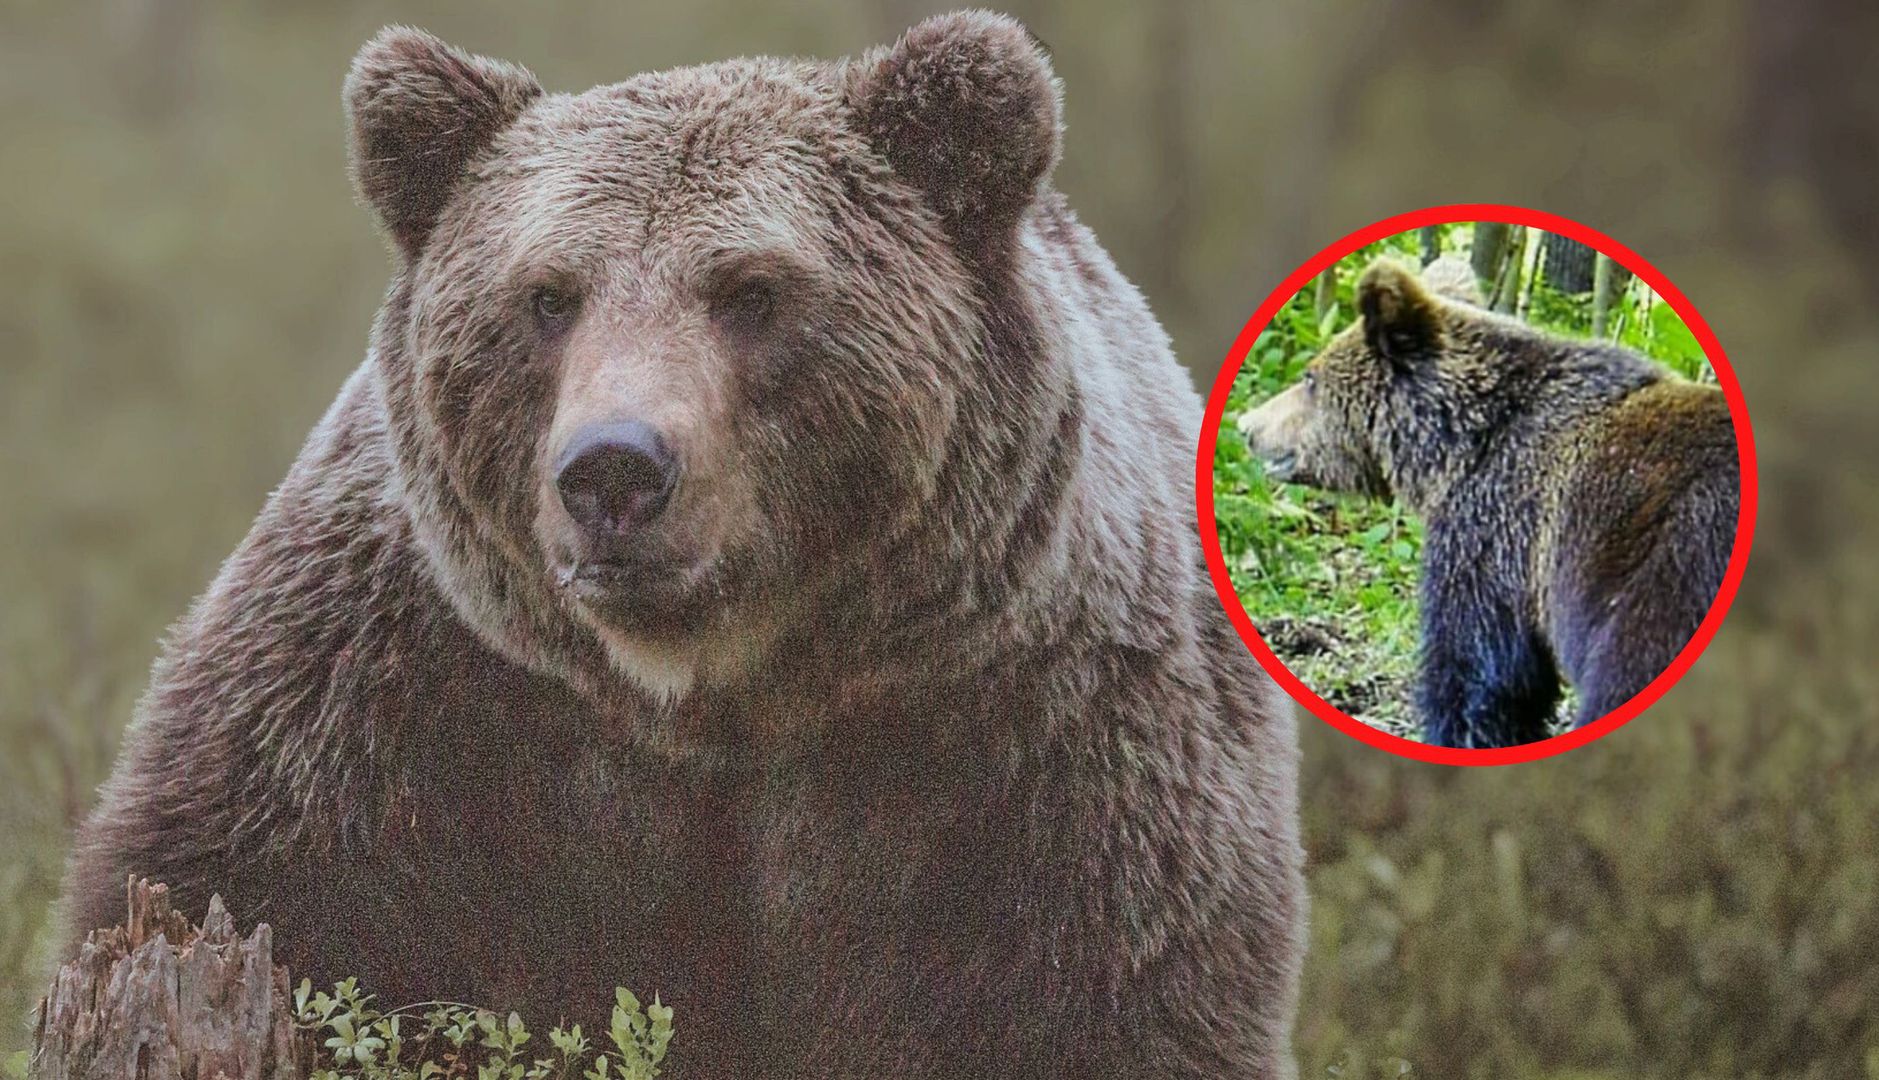 "Wielokrotnie widziany był niedźwiedź". Pilne ostrzeżenie